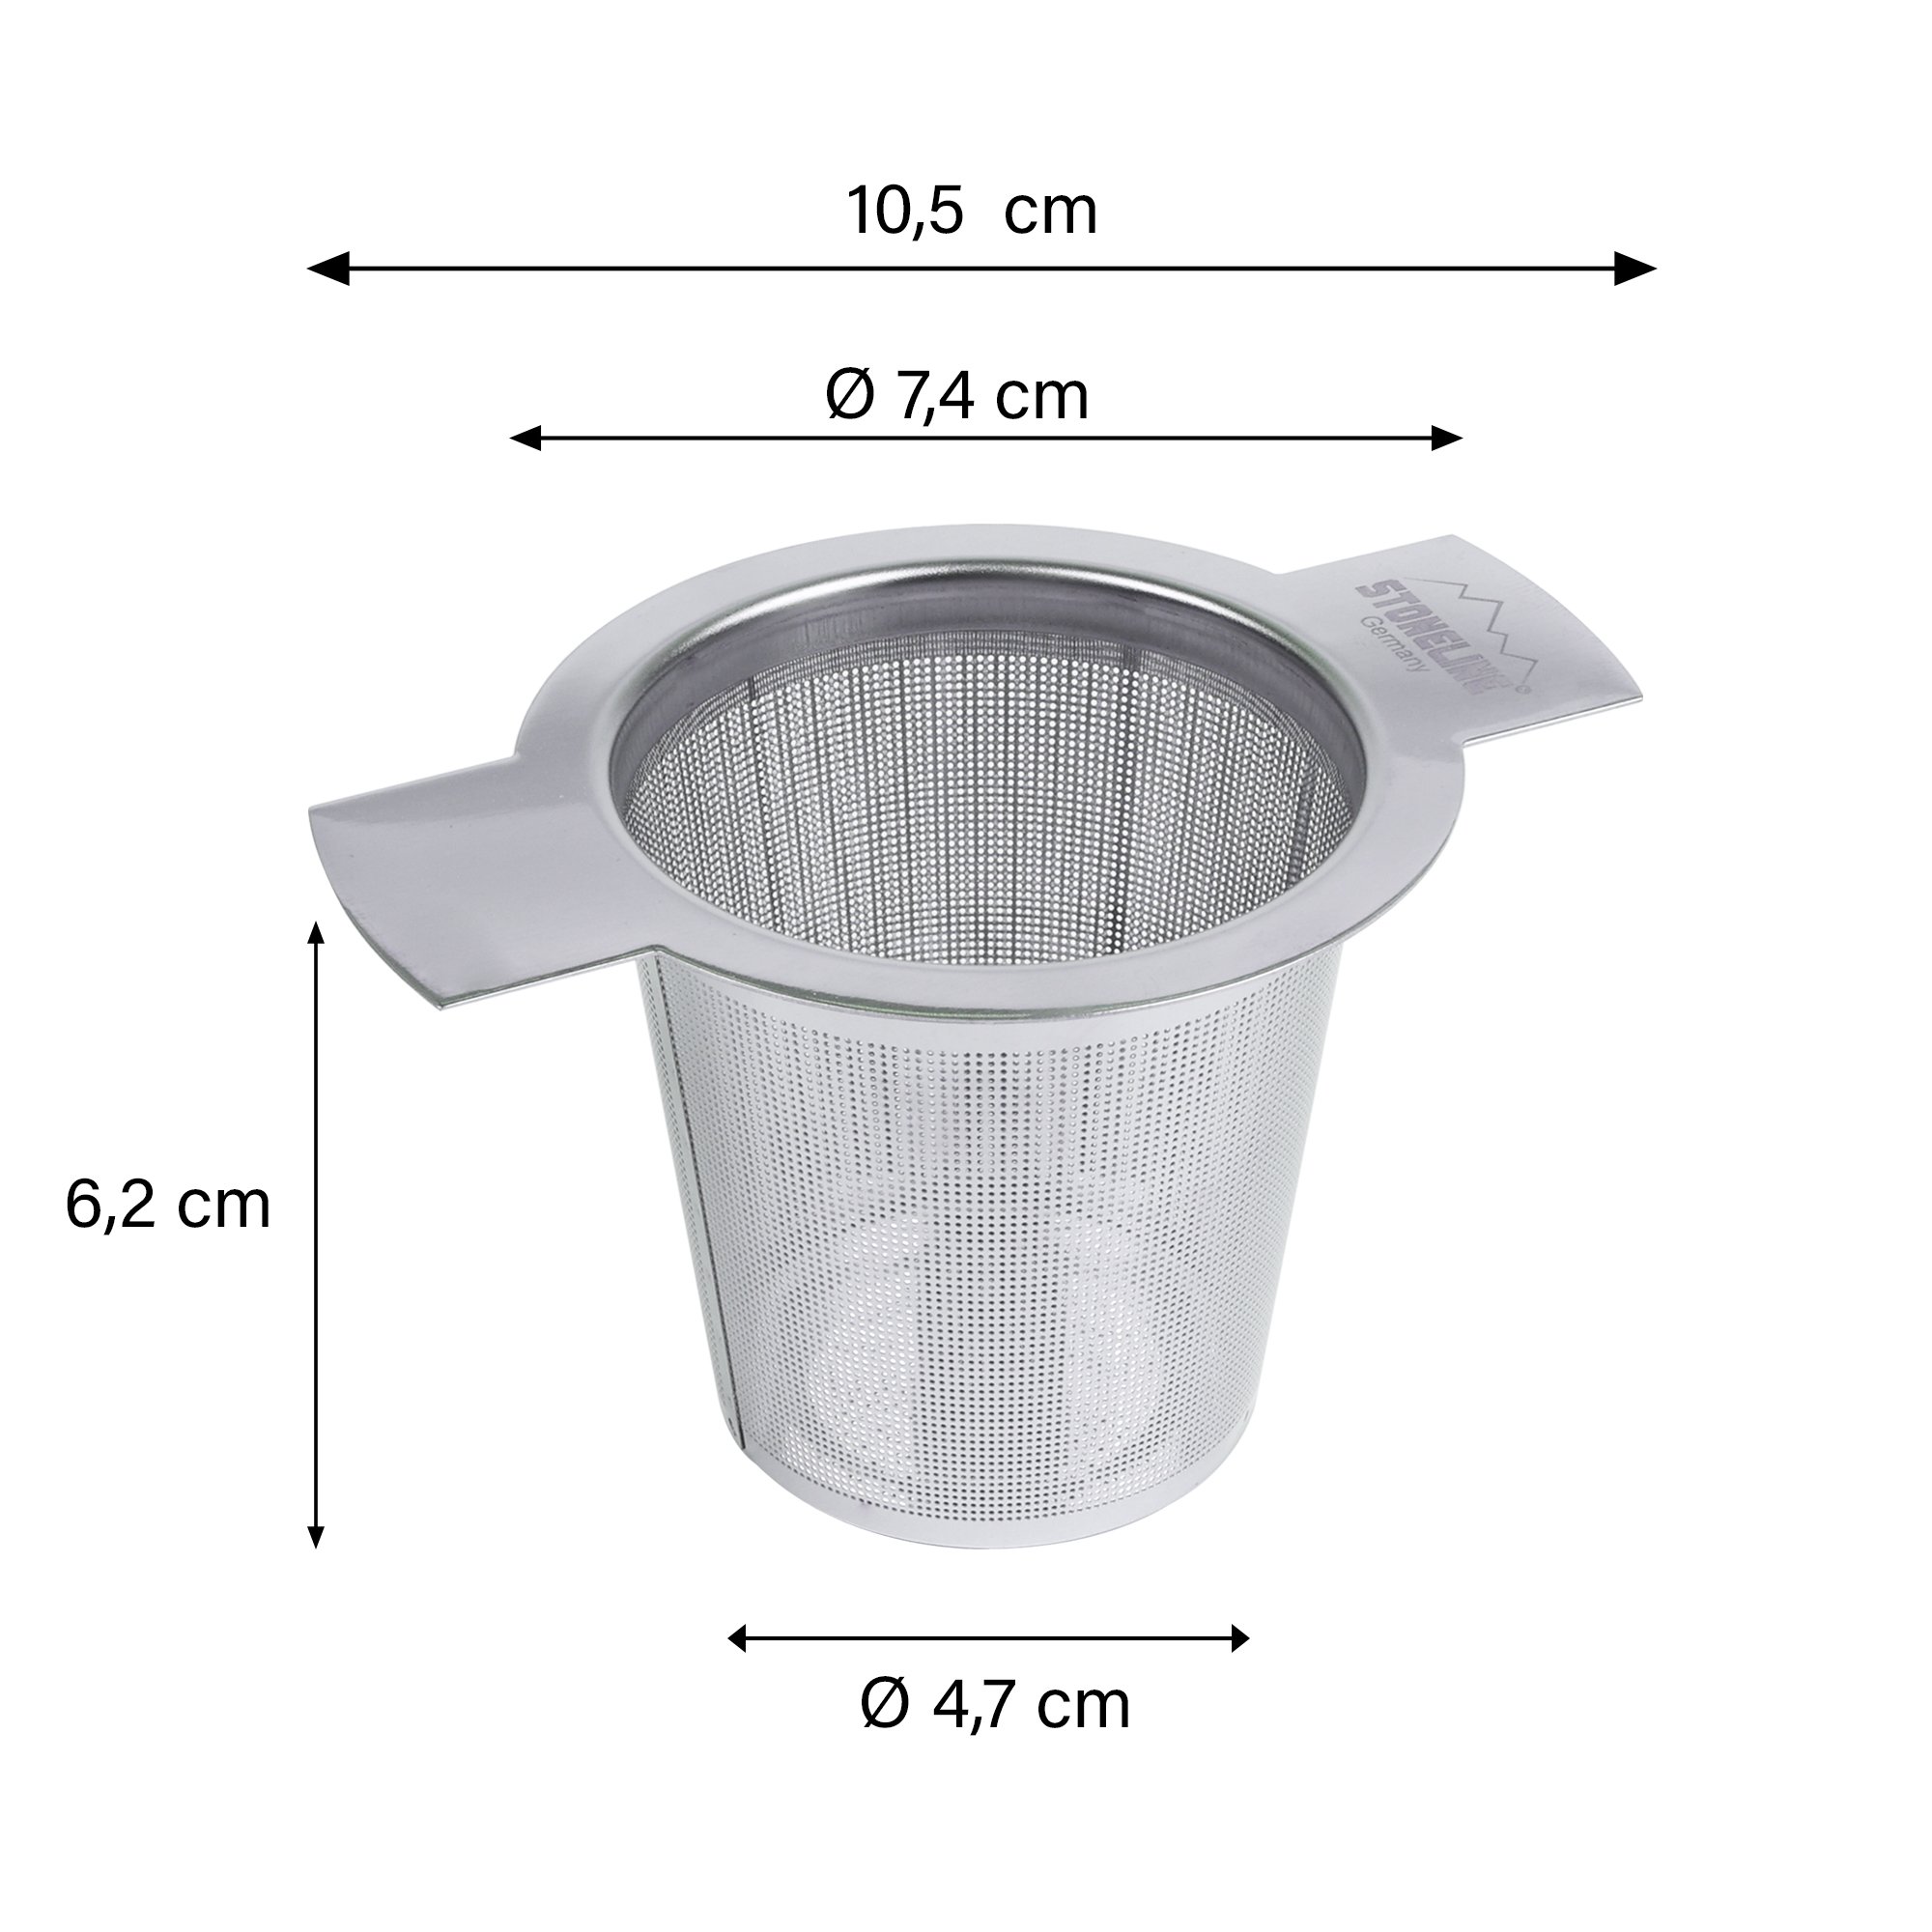 STONELINE® 2 pc Tea Infuser Set for Loose Tea 32.5 cm, Stainless Steel | Tea Strainer